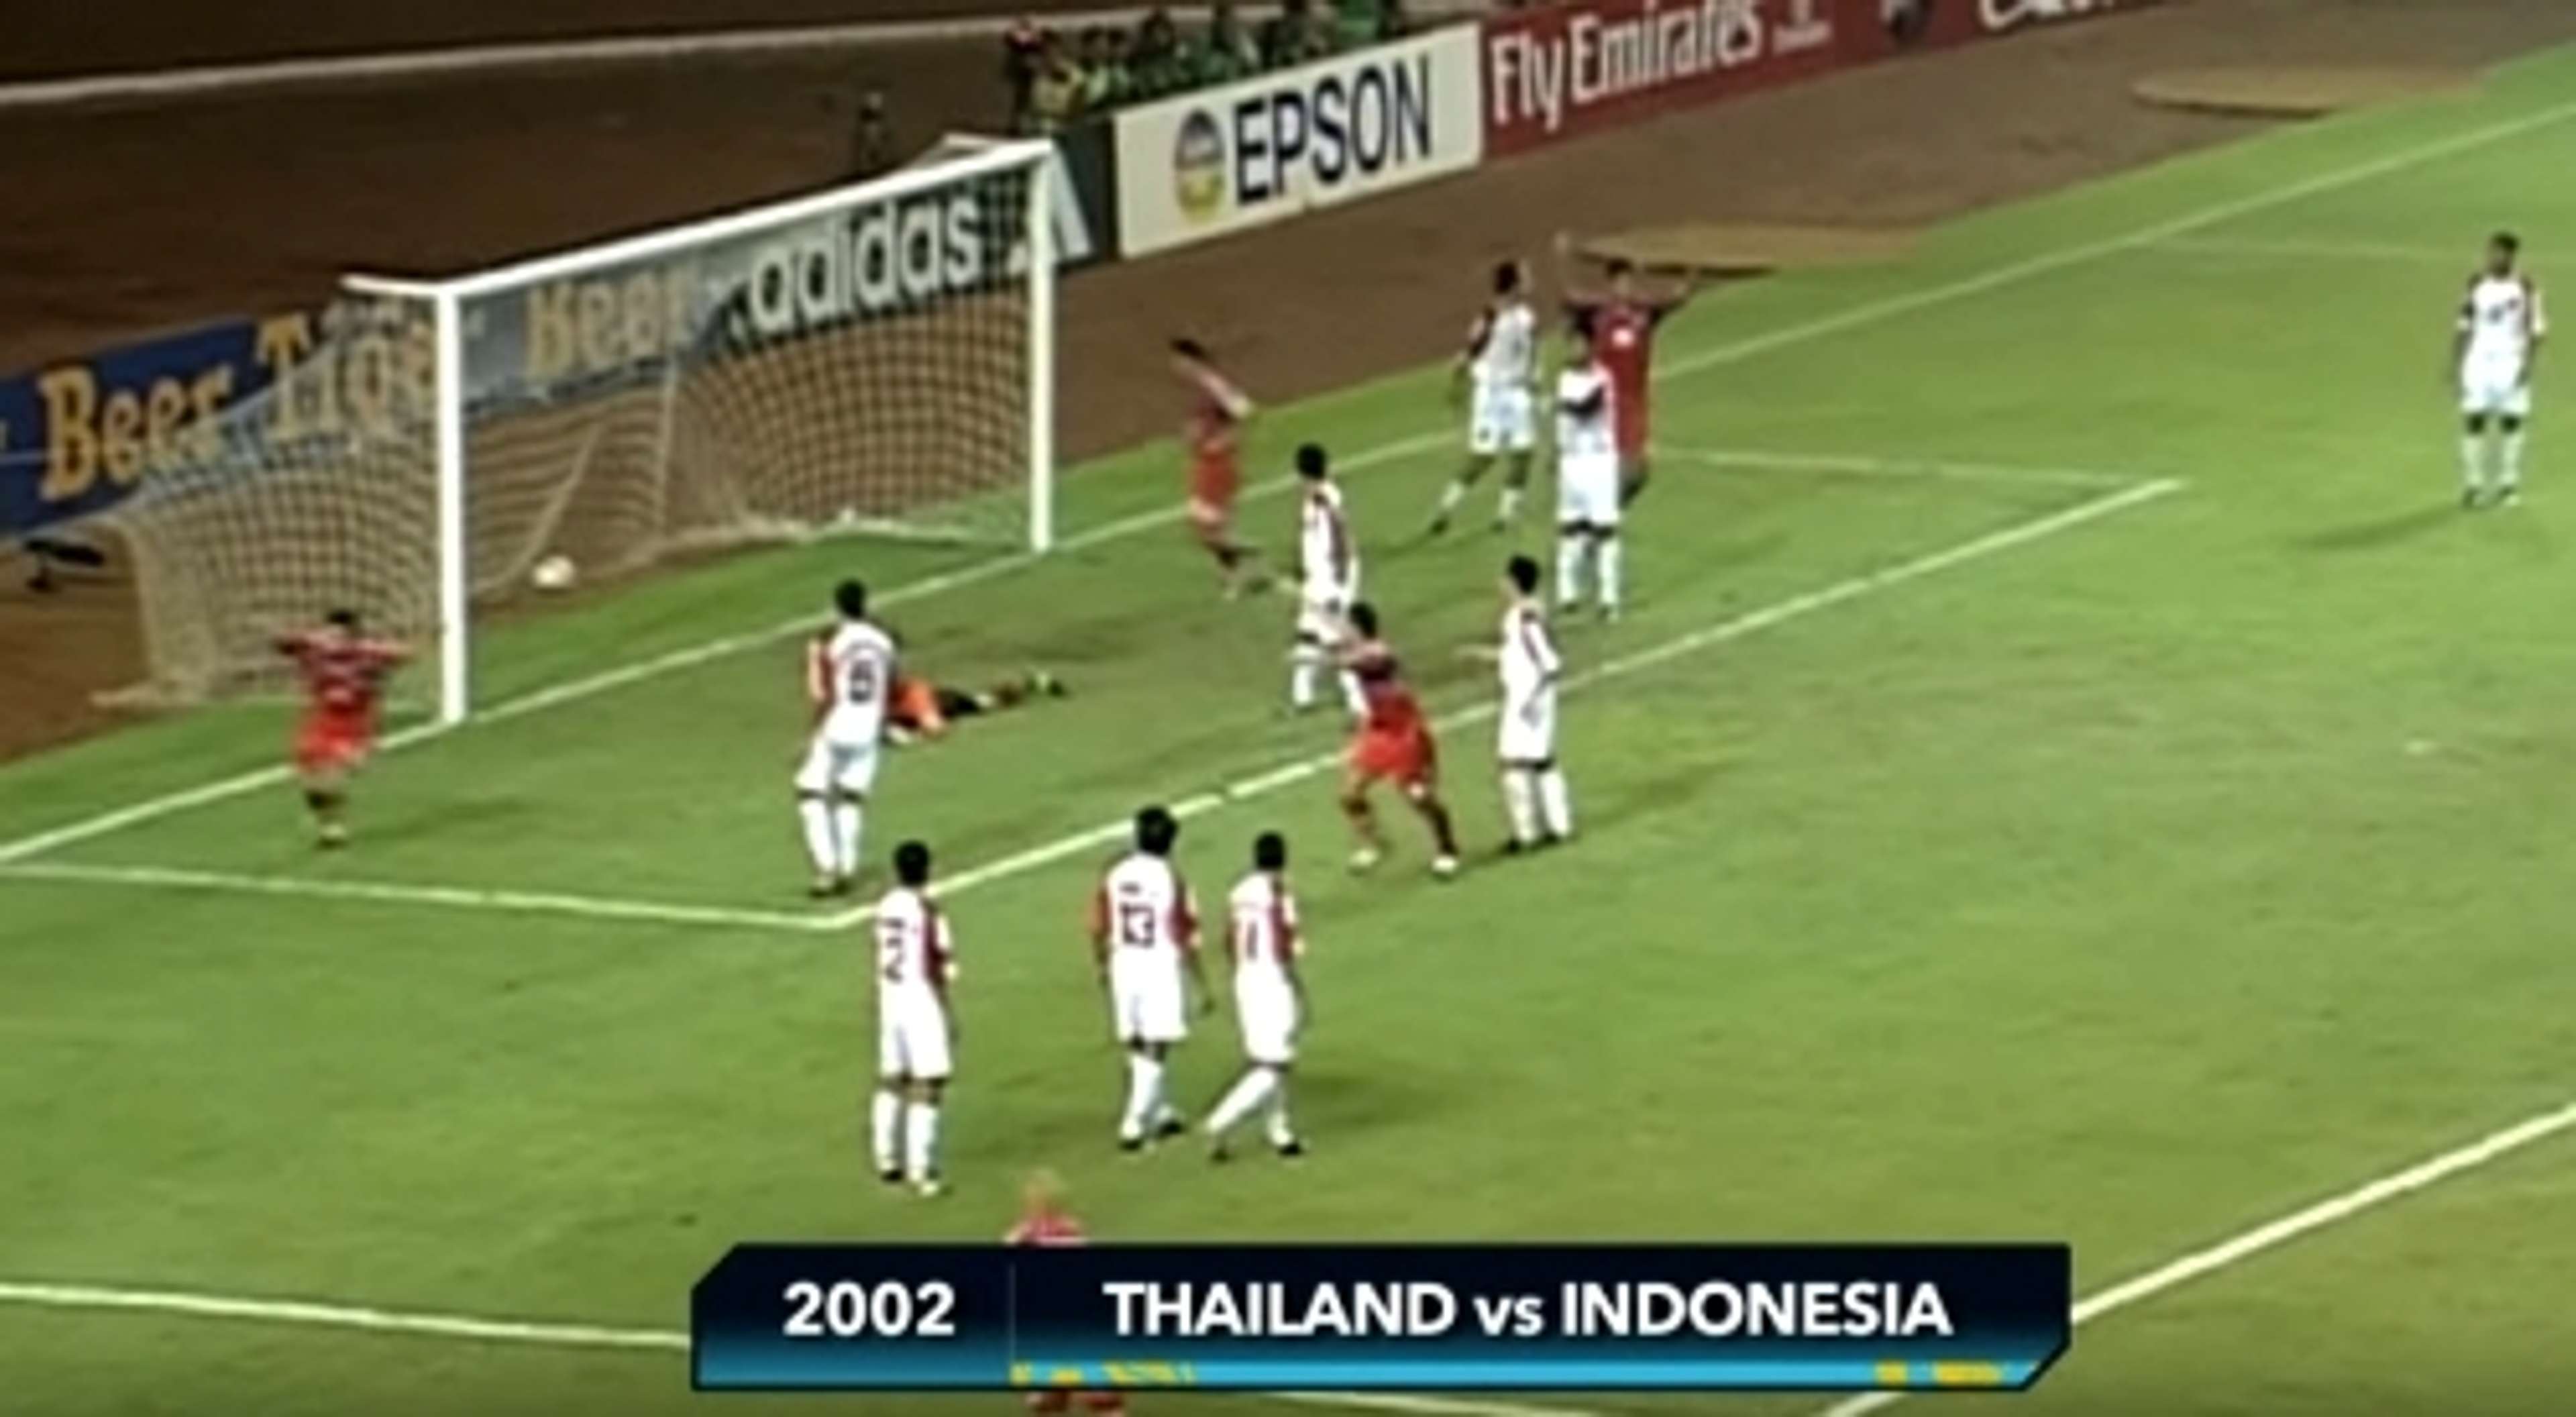 อินโดนิเซีย - ไทย AFF Suzuki Cup 2002